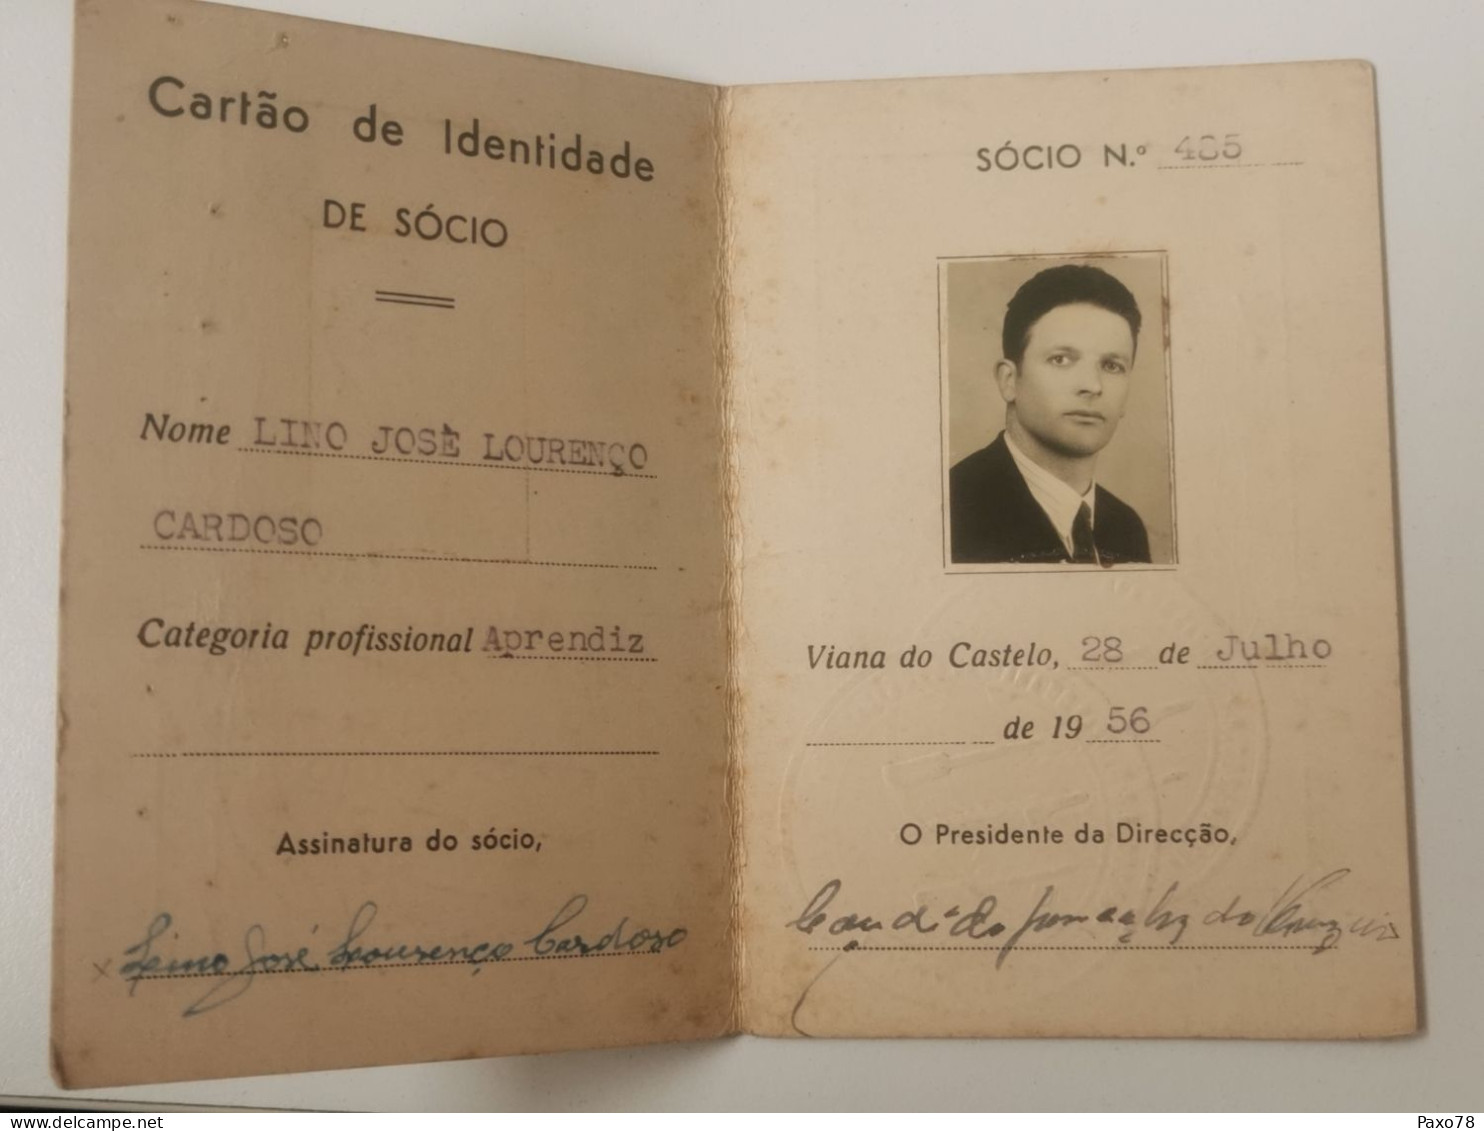 Carta De Identidade, Sindicato Nacional Dos Empregados E Operarios Panificaçâo Viana Do Castelo 1956 - Brieven En Documenten